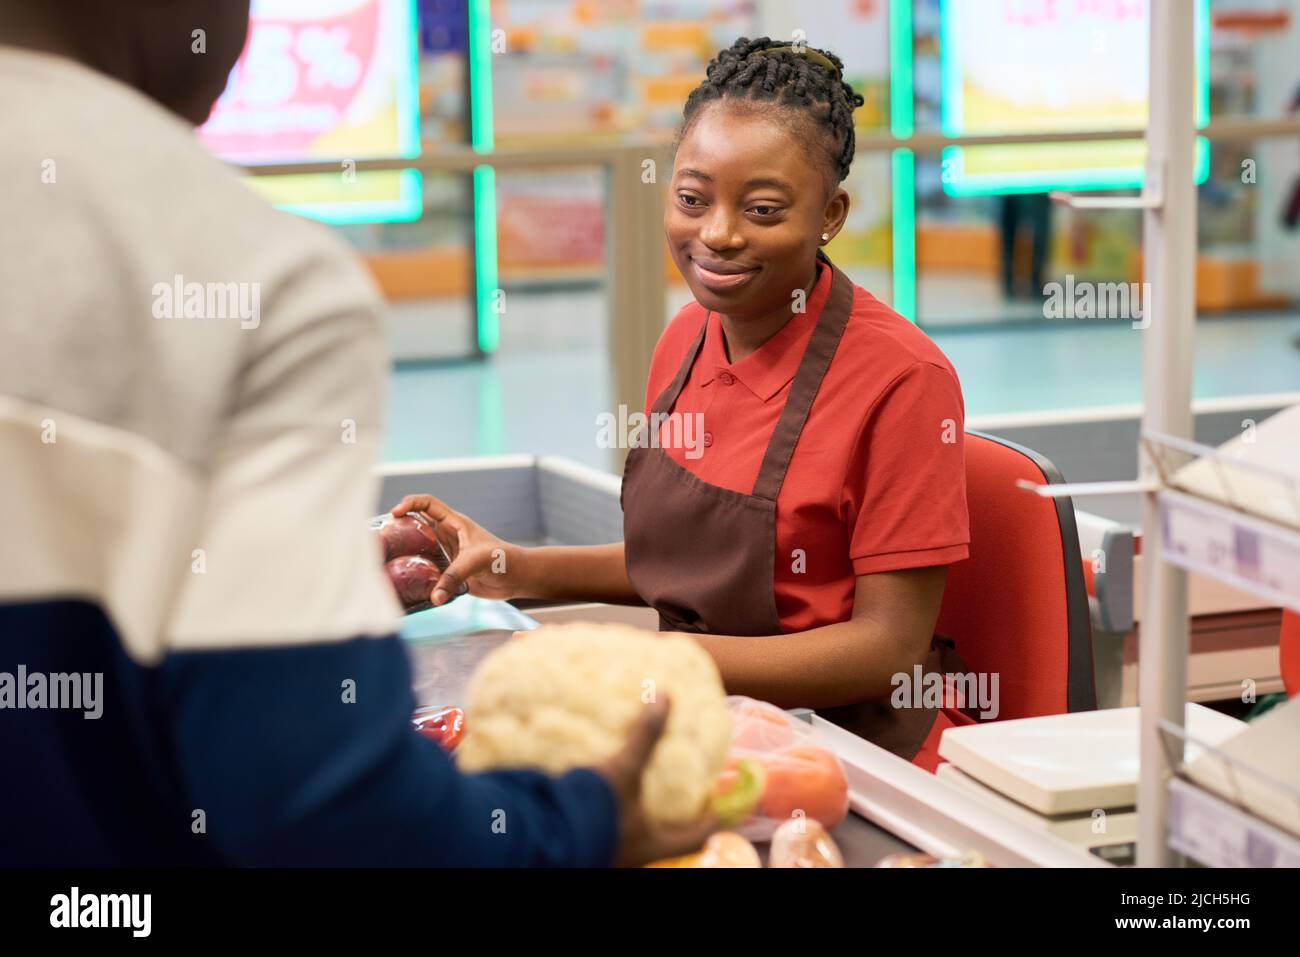 Glückliche junge schwarze Frau in Uniform, die an der Theke sitzt und Lebensmittel scannt, während sie männliche Kunden im Supermarkt bedient Stockfoto